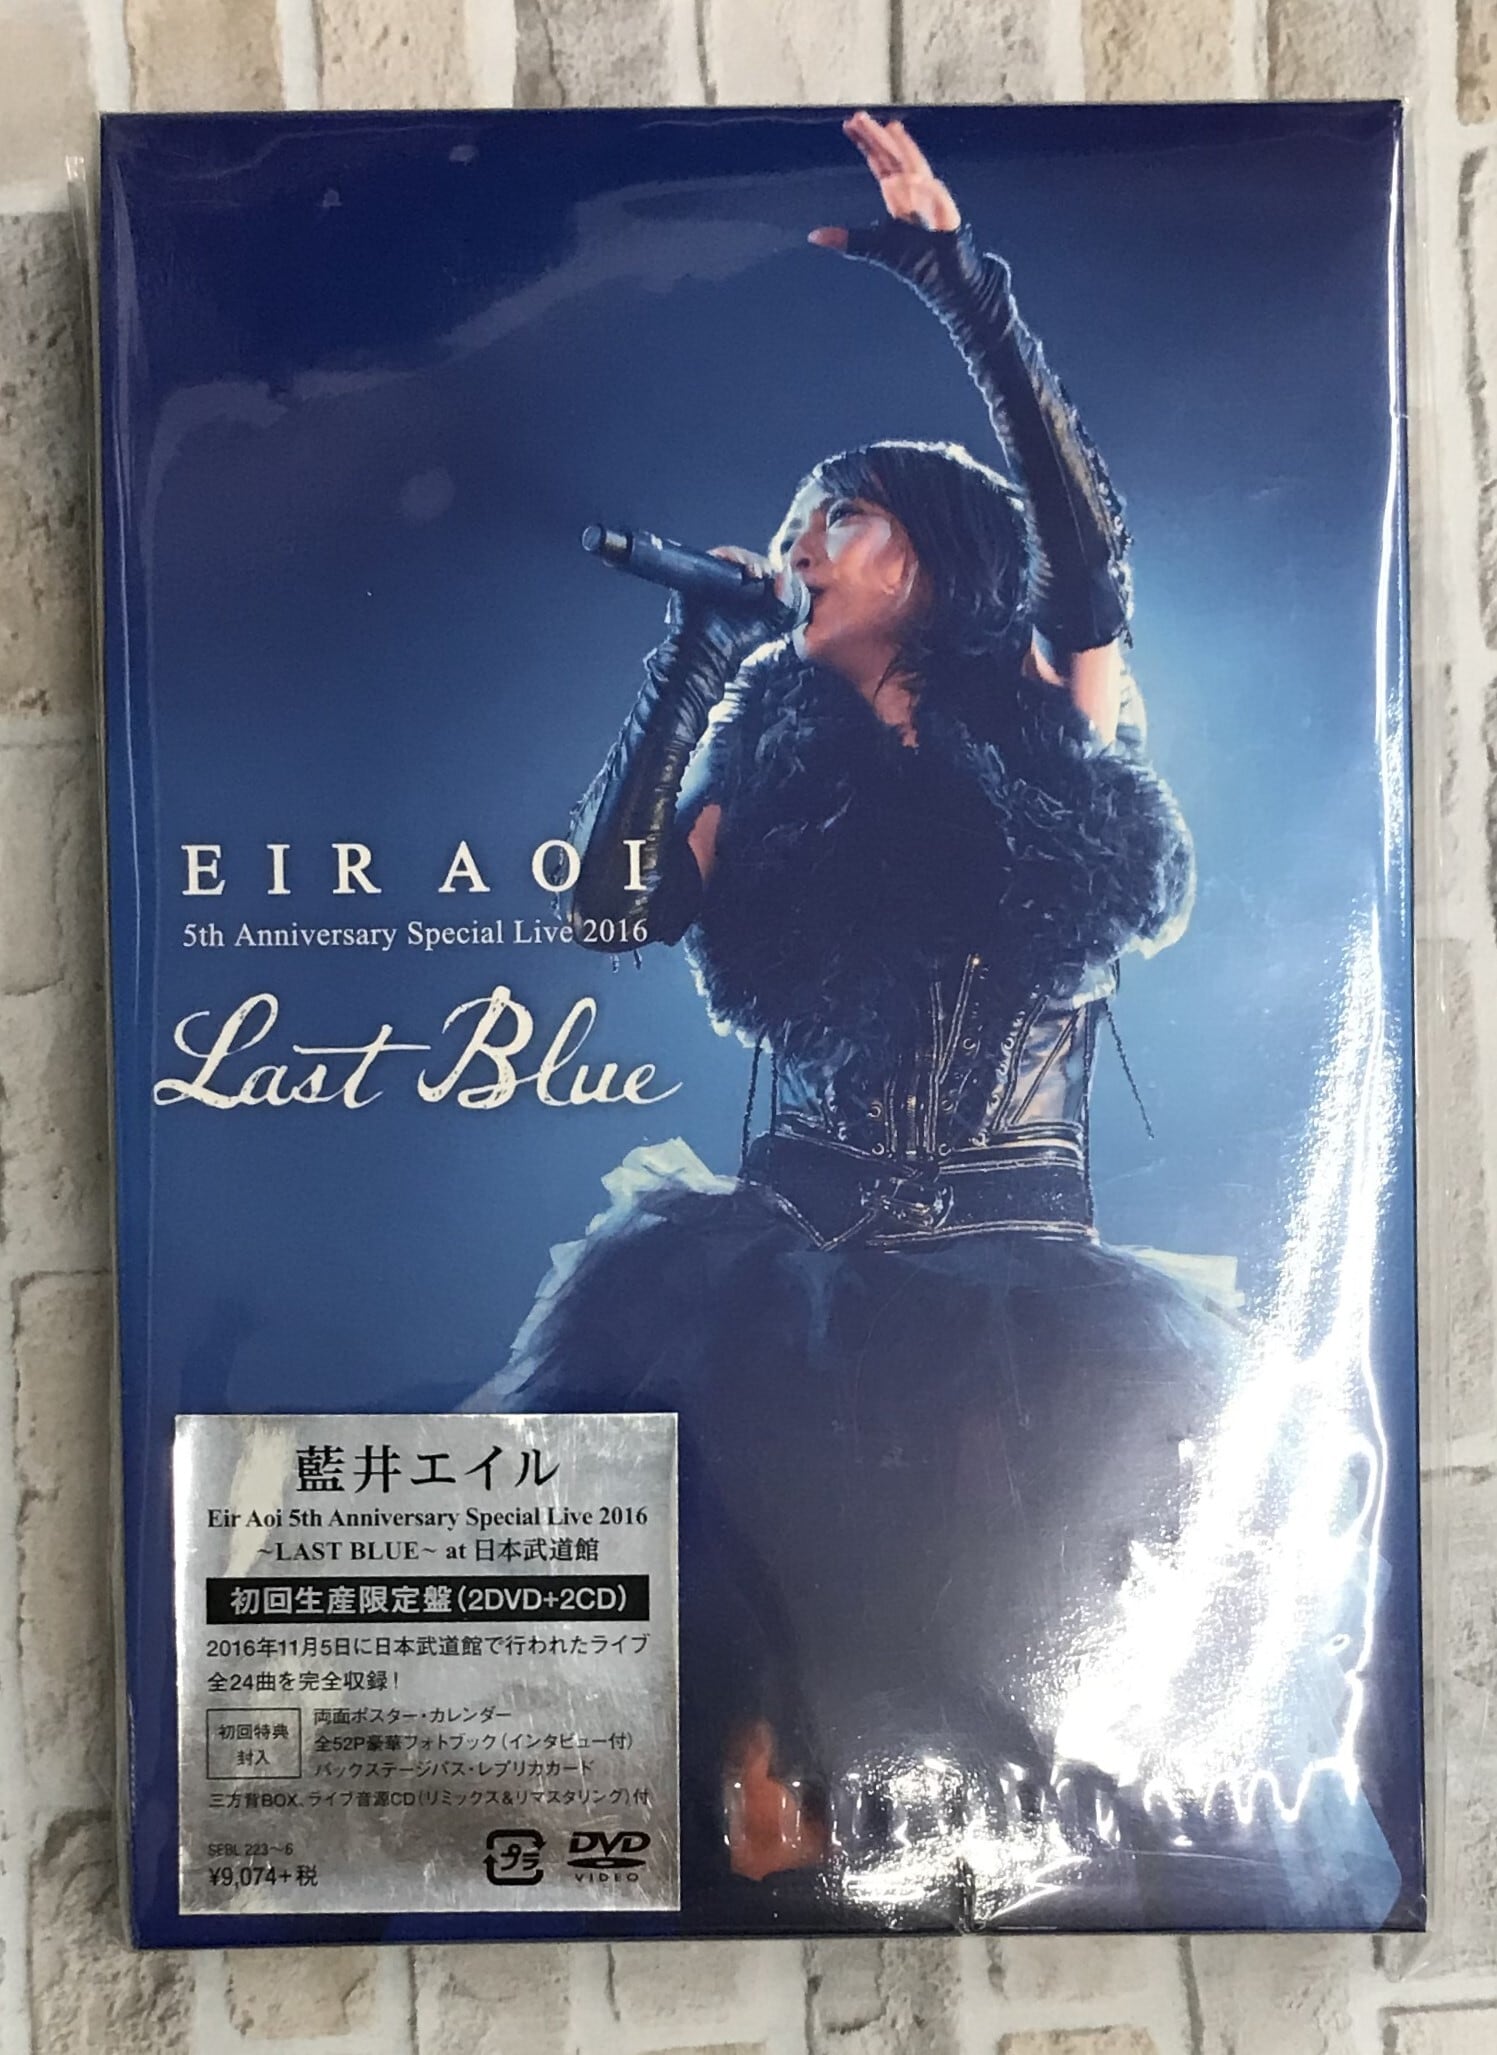 藍井エイル Eir Aoi 5th Live 2016 BD 限定盤